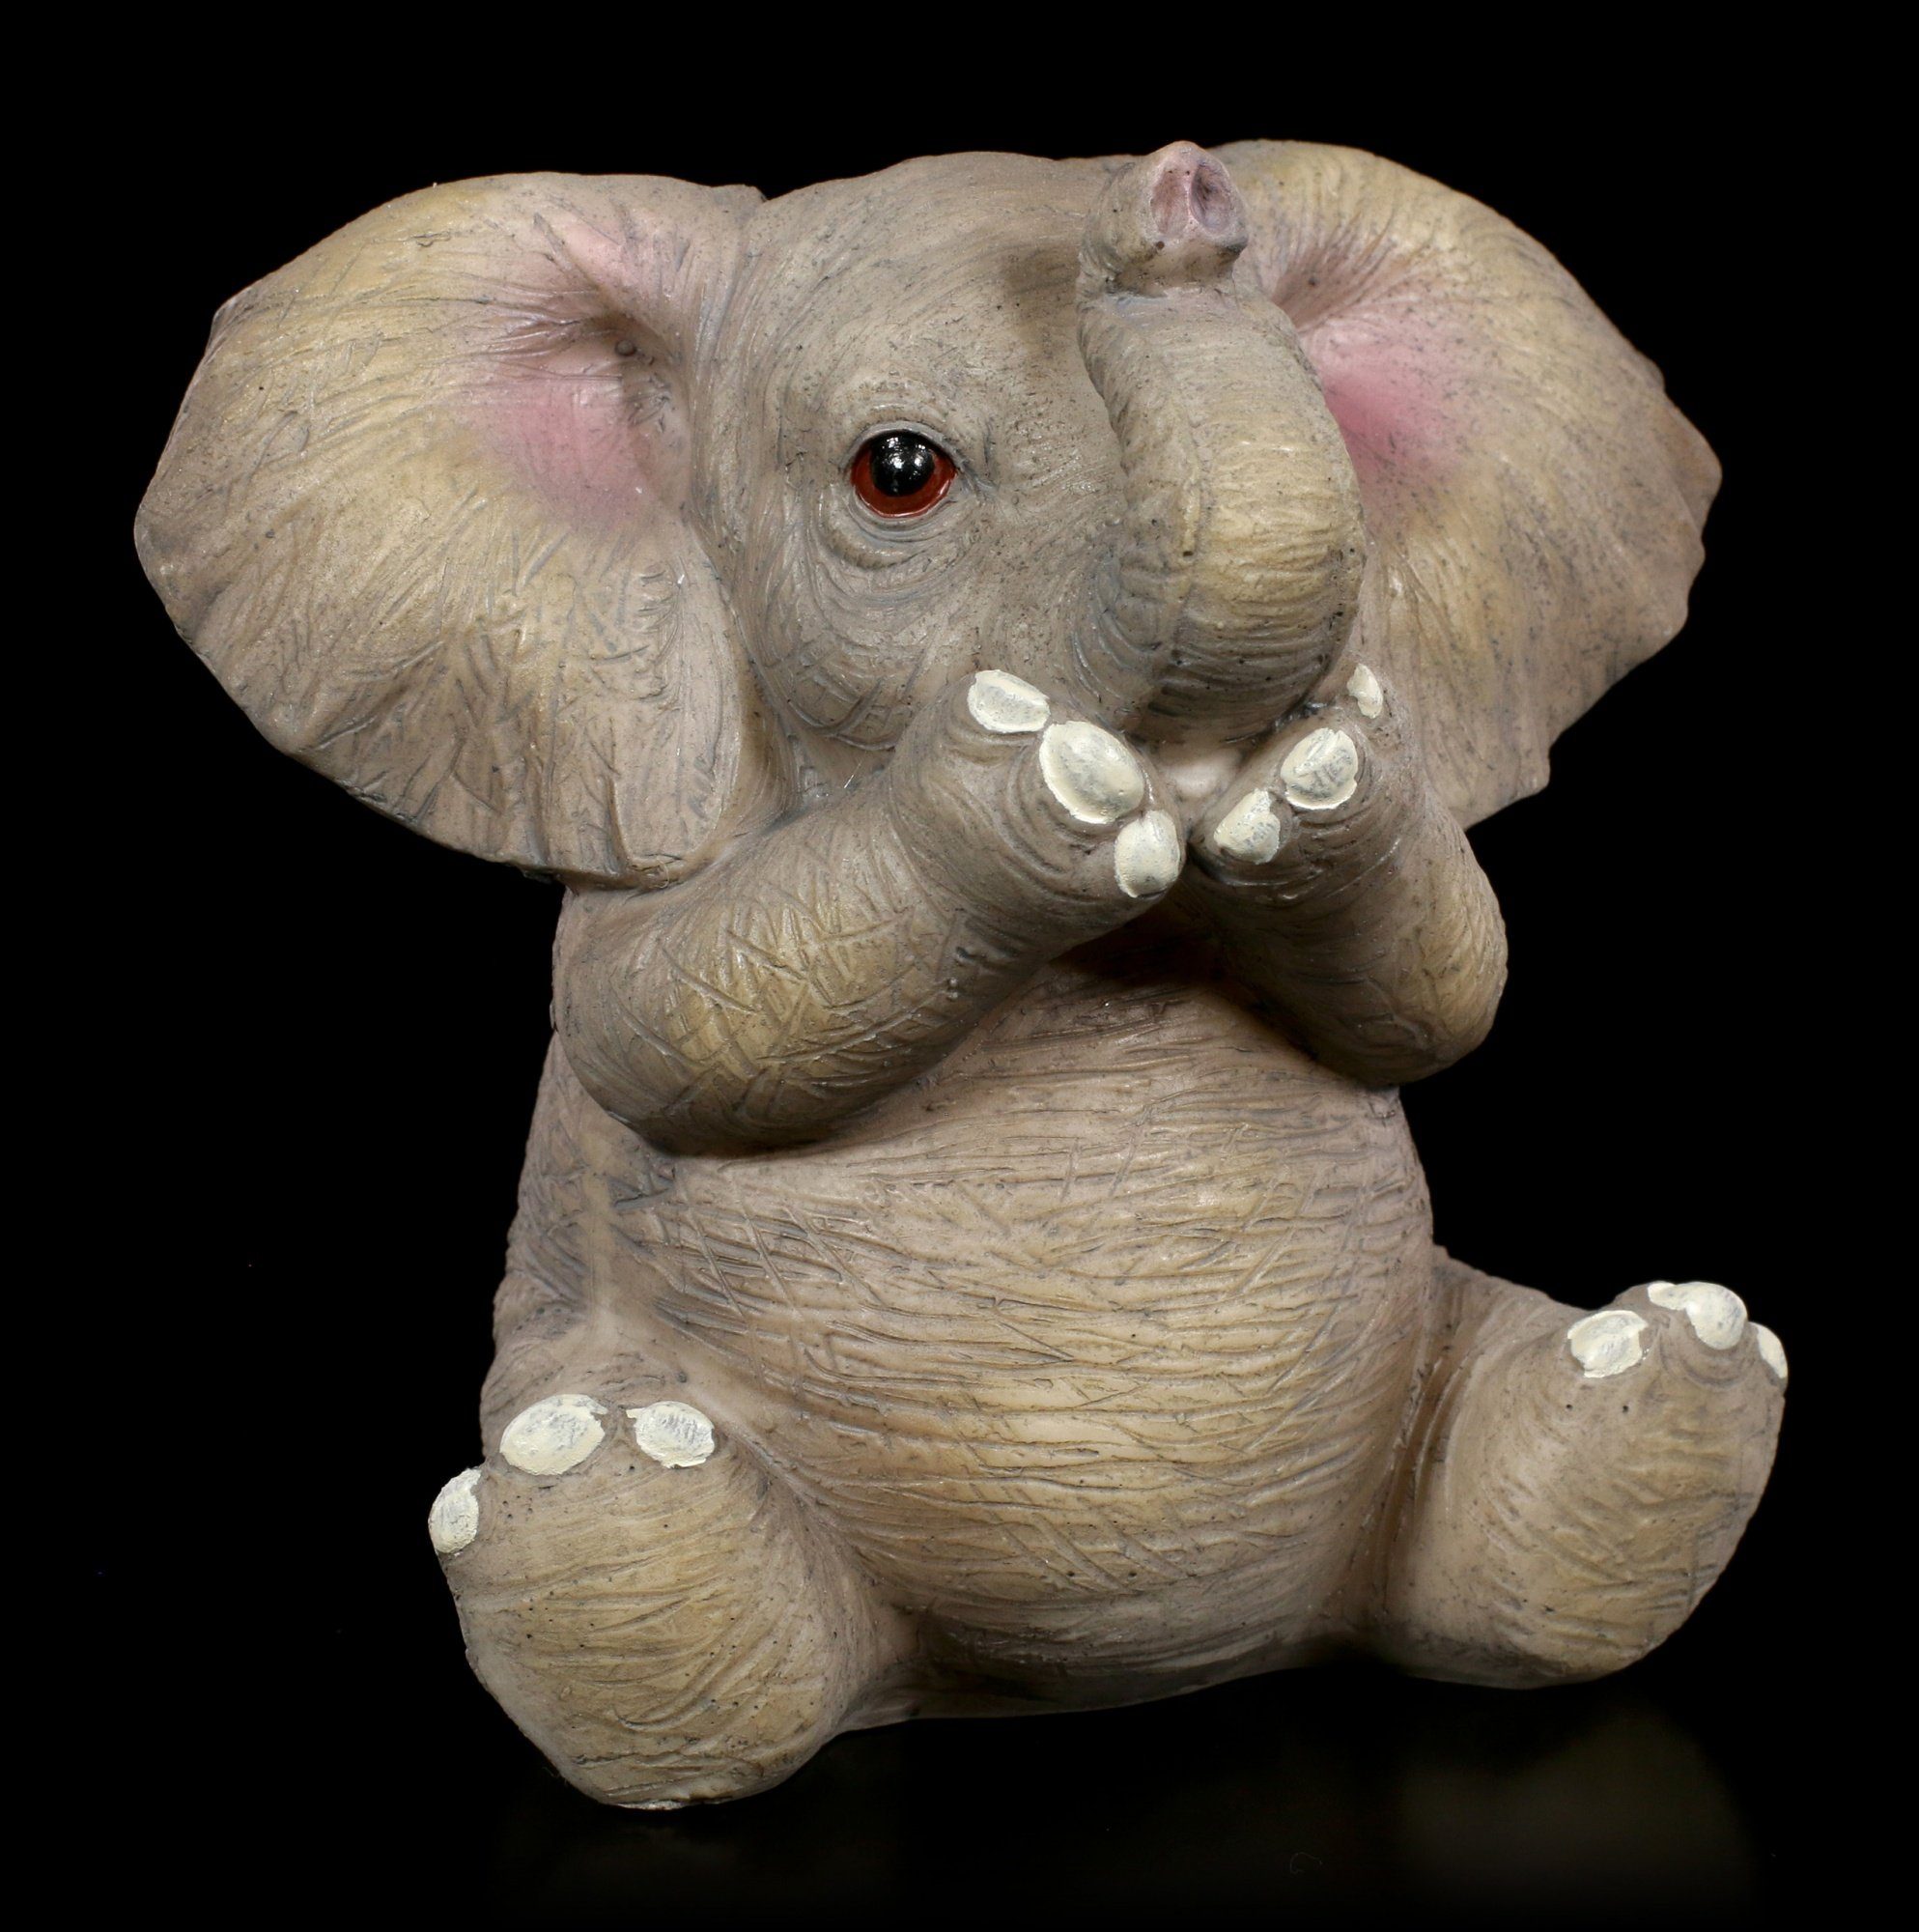 GmbH Hall Weise Böses Willow Tierfigur Elefanten - Drei Figuren Baby - Shop Tier Deko - Nichts Figuren